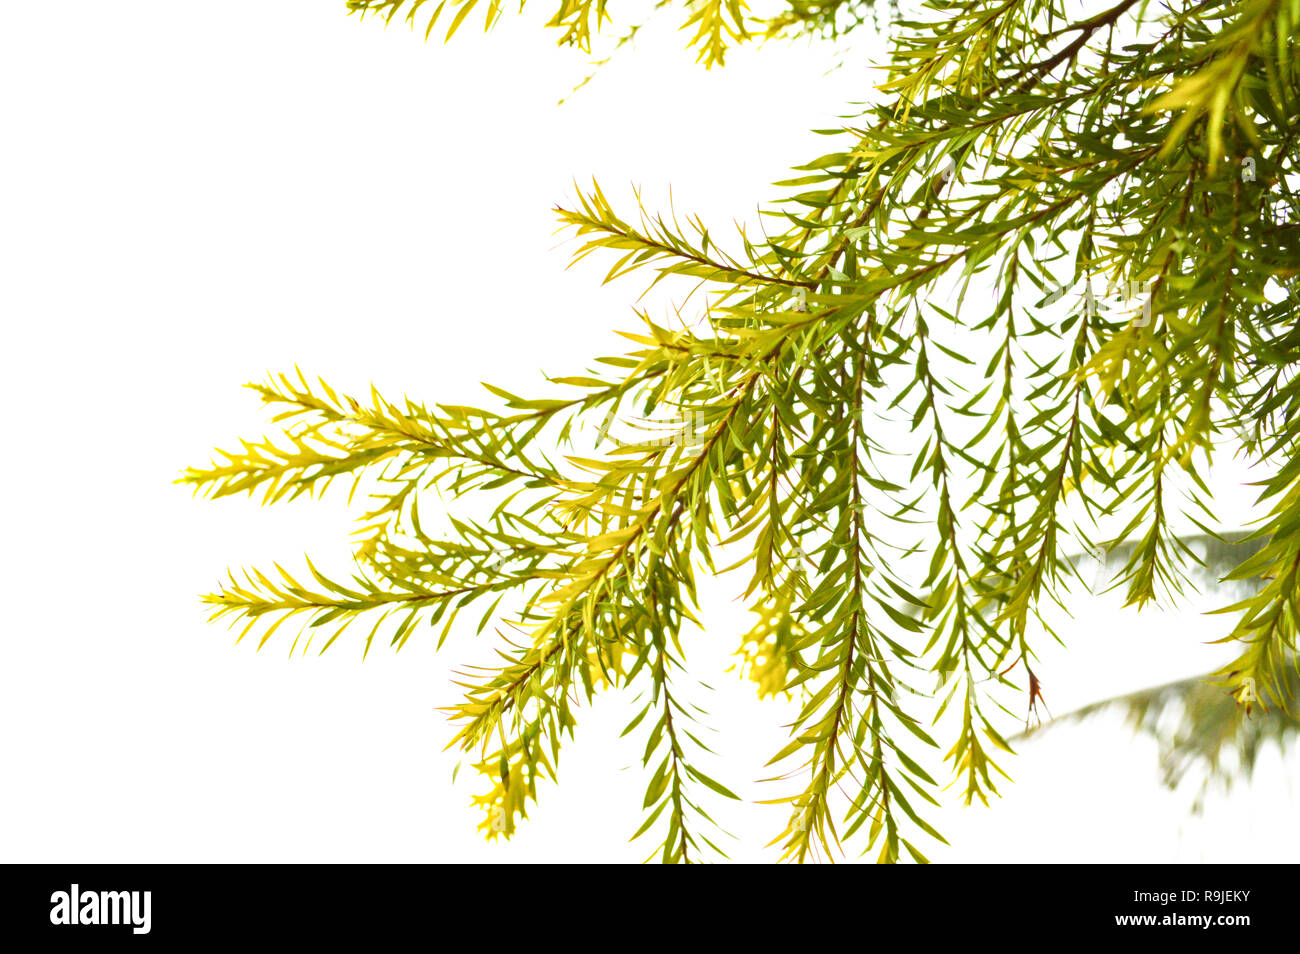 pine leaf isolated on white background / Chamaecyparis pisifera - Dacrydium elatum Pine family Stock Photo